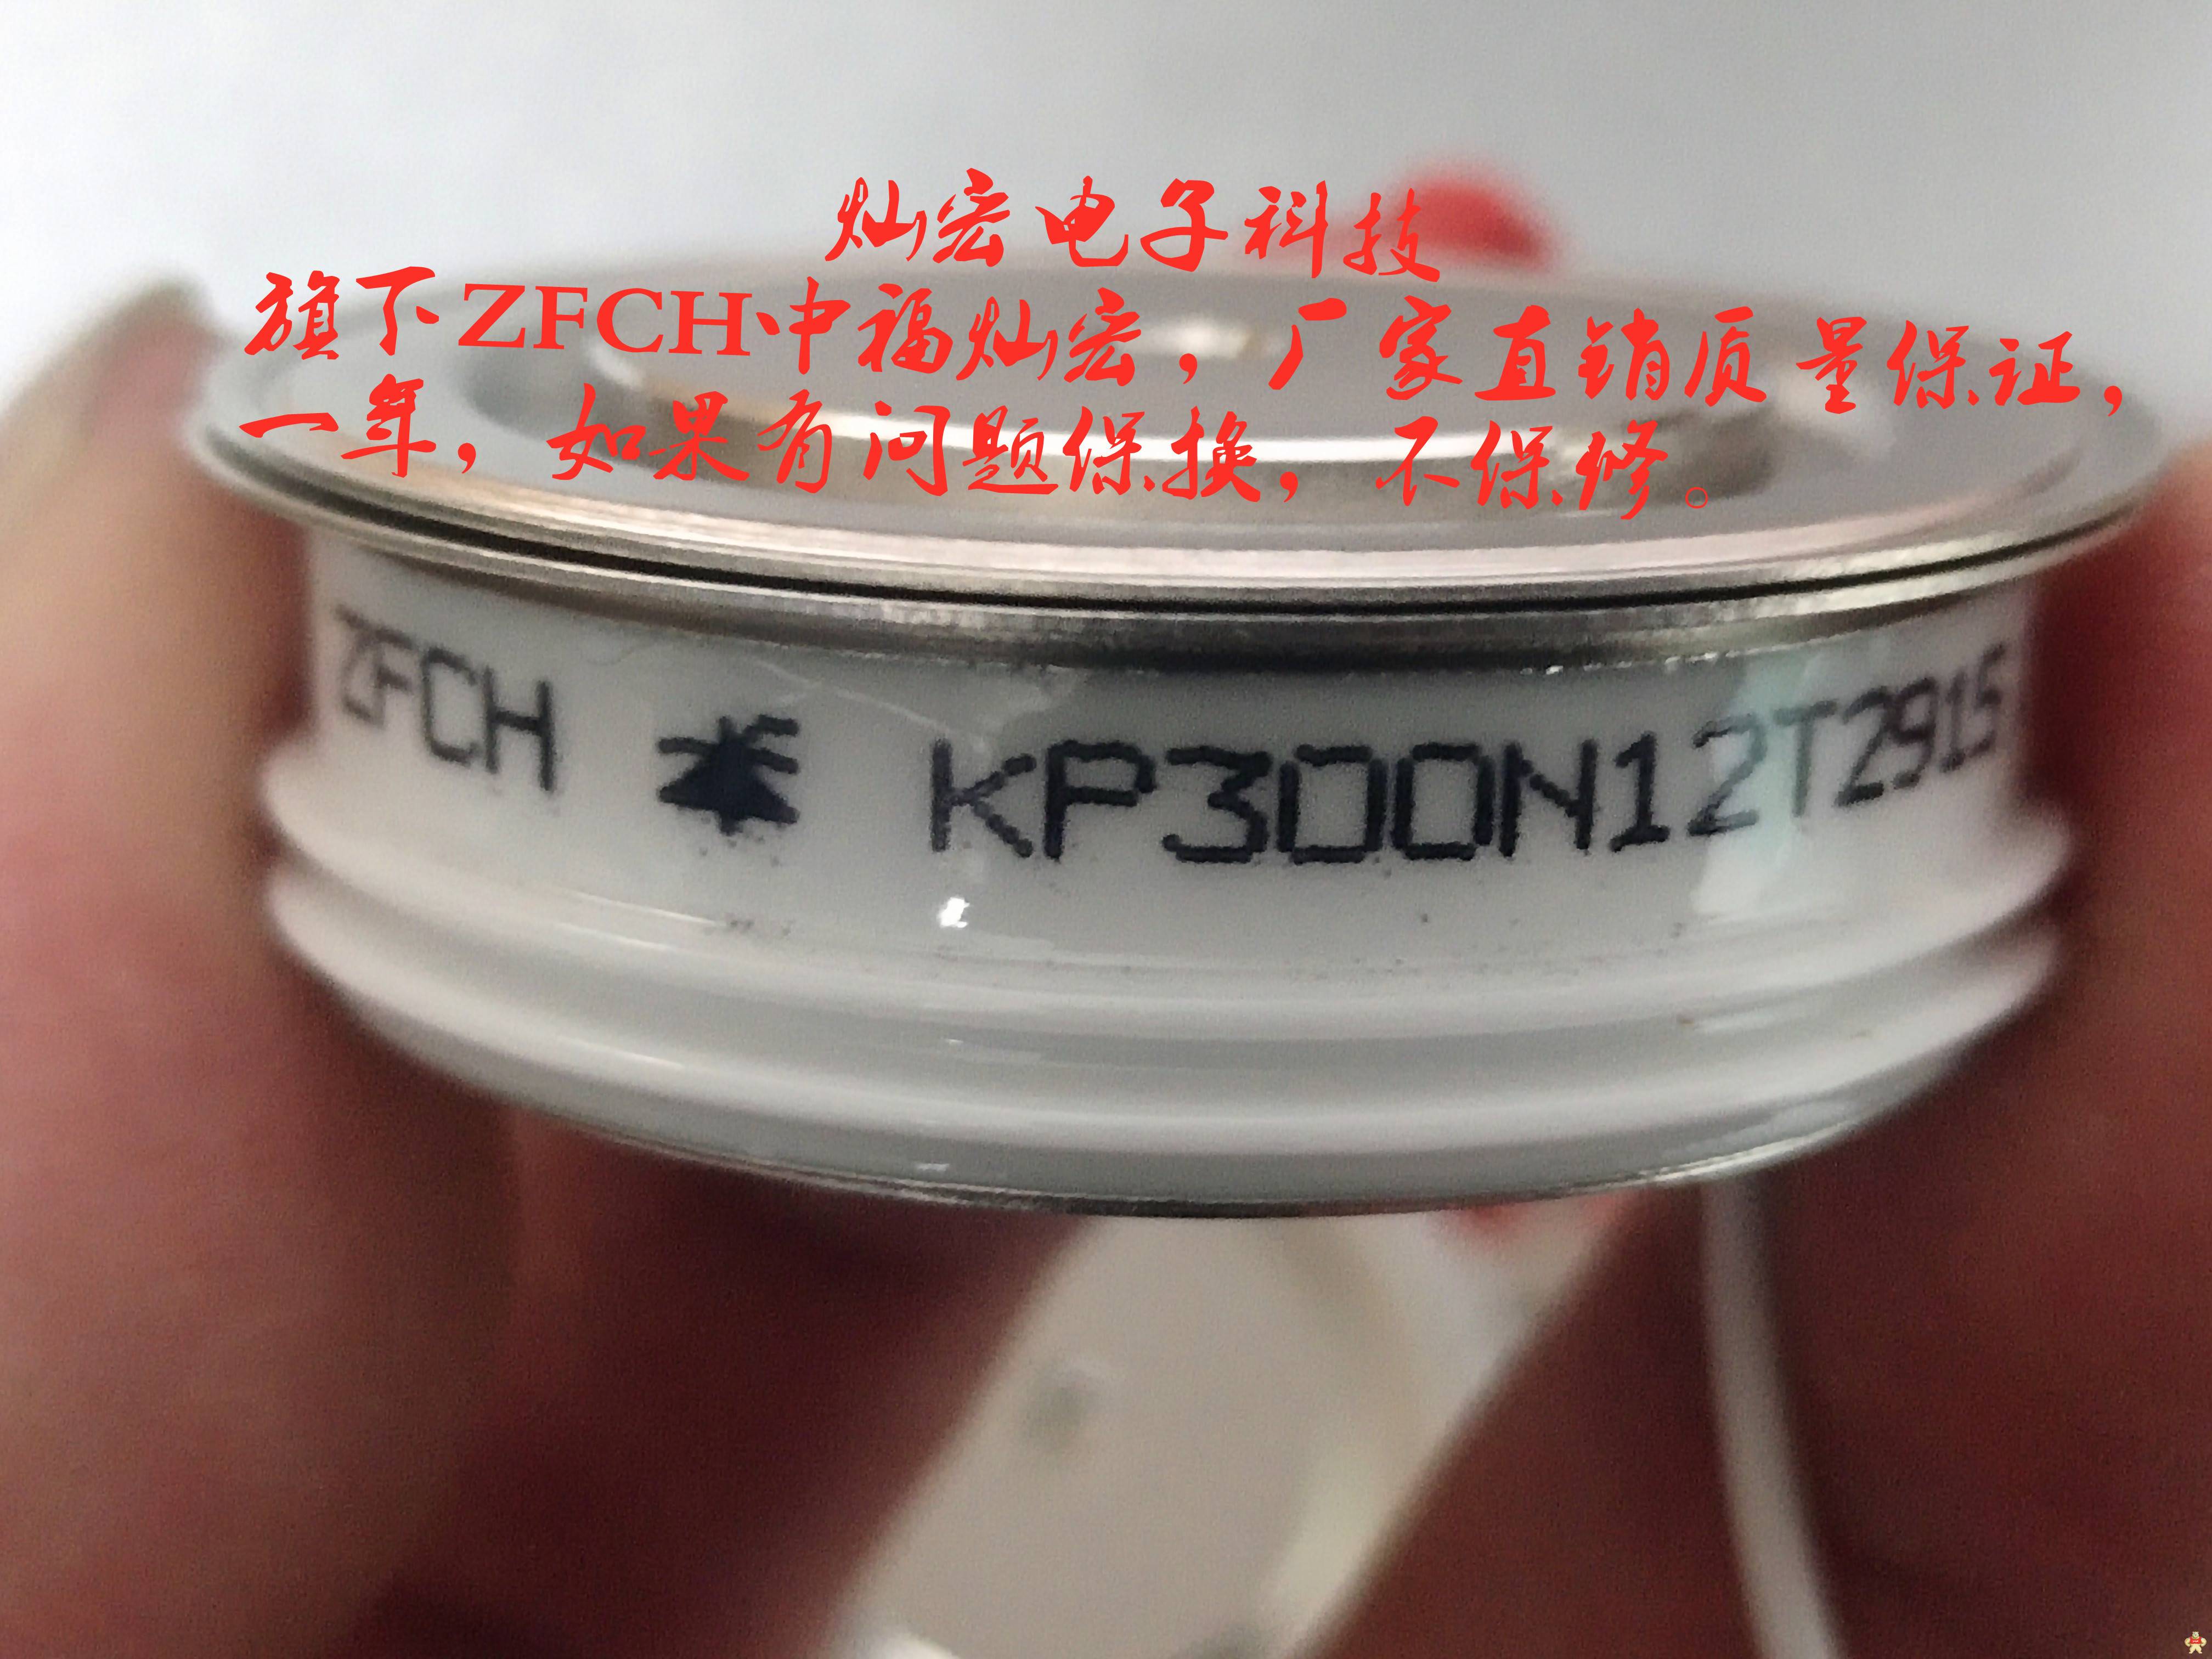 自产ZFCH可控硅/晶闸管KP9 1100-8 KP9 1100-10 KP9 1100-12 可控硅模块,晶闸管模块,二极管模块,平板模块,圆饼晶闸管